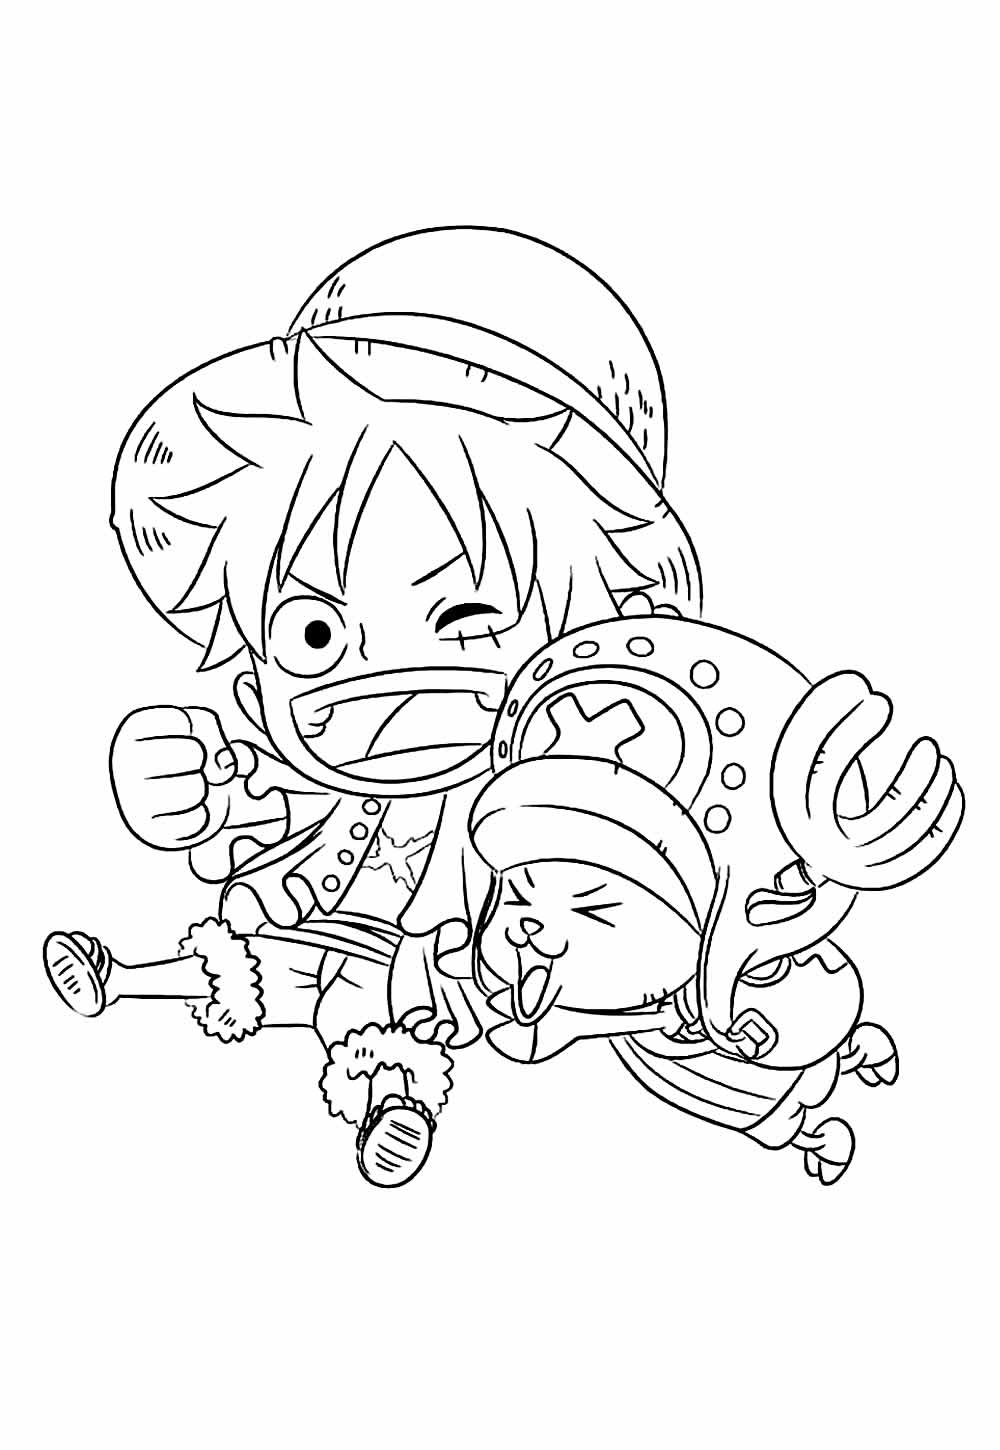 Desenho do One Piece para colorir